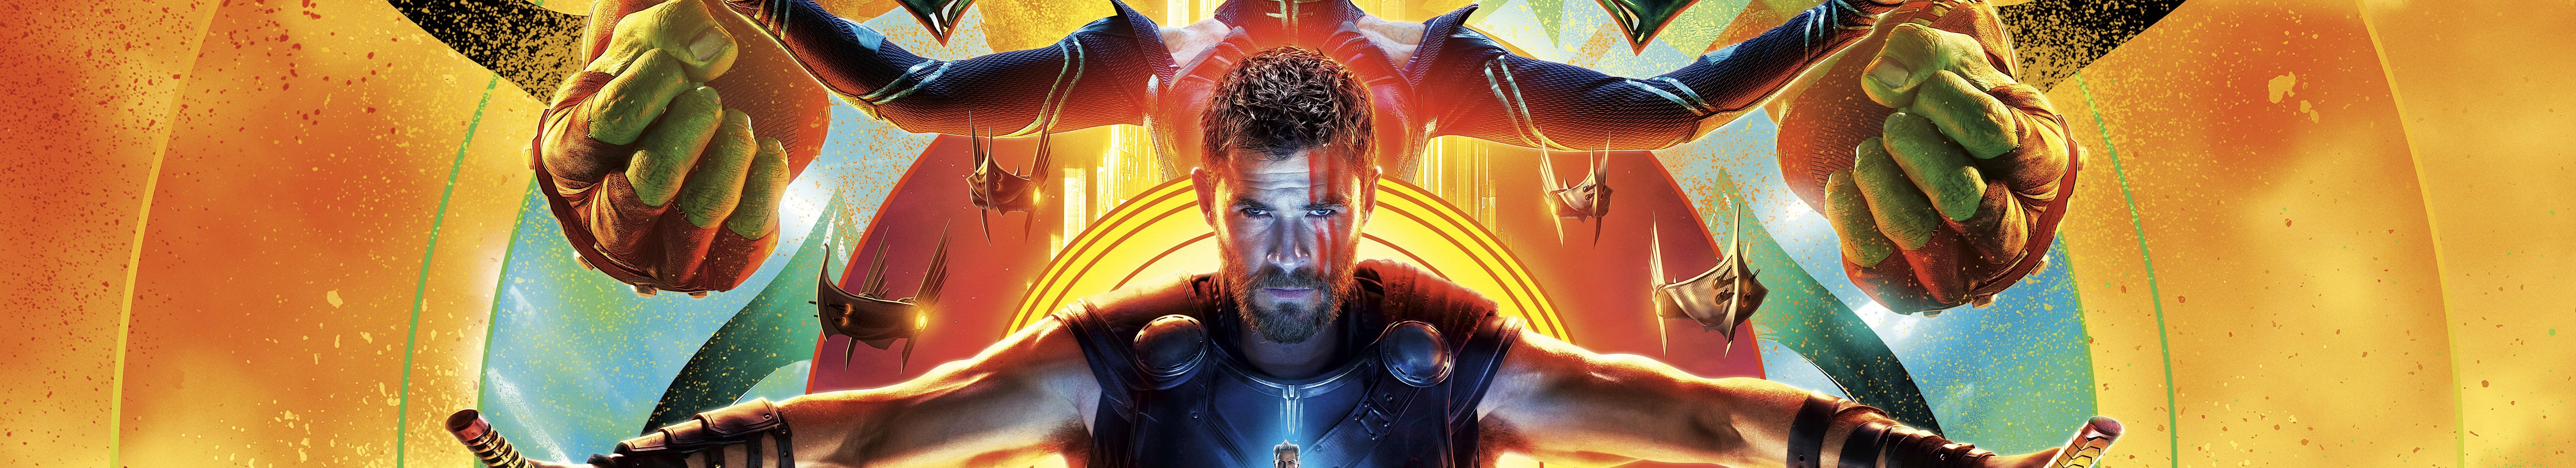 Thor Ragnarok Poster Three Screen Wallpaper